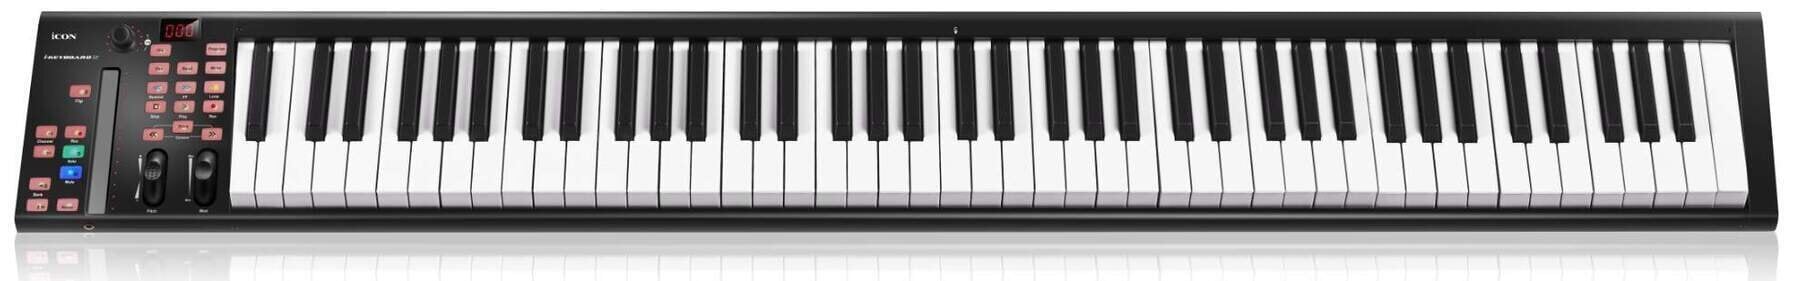 Clavier MIDI iCON iKeyboard 8X